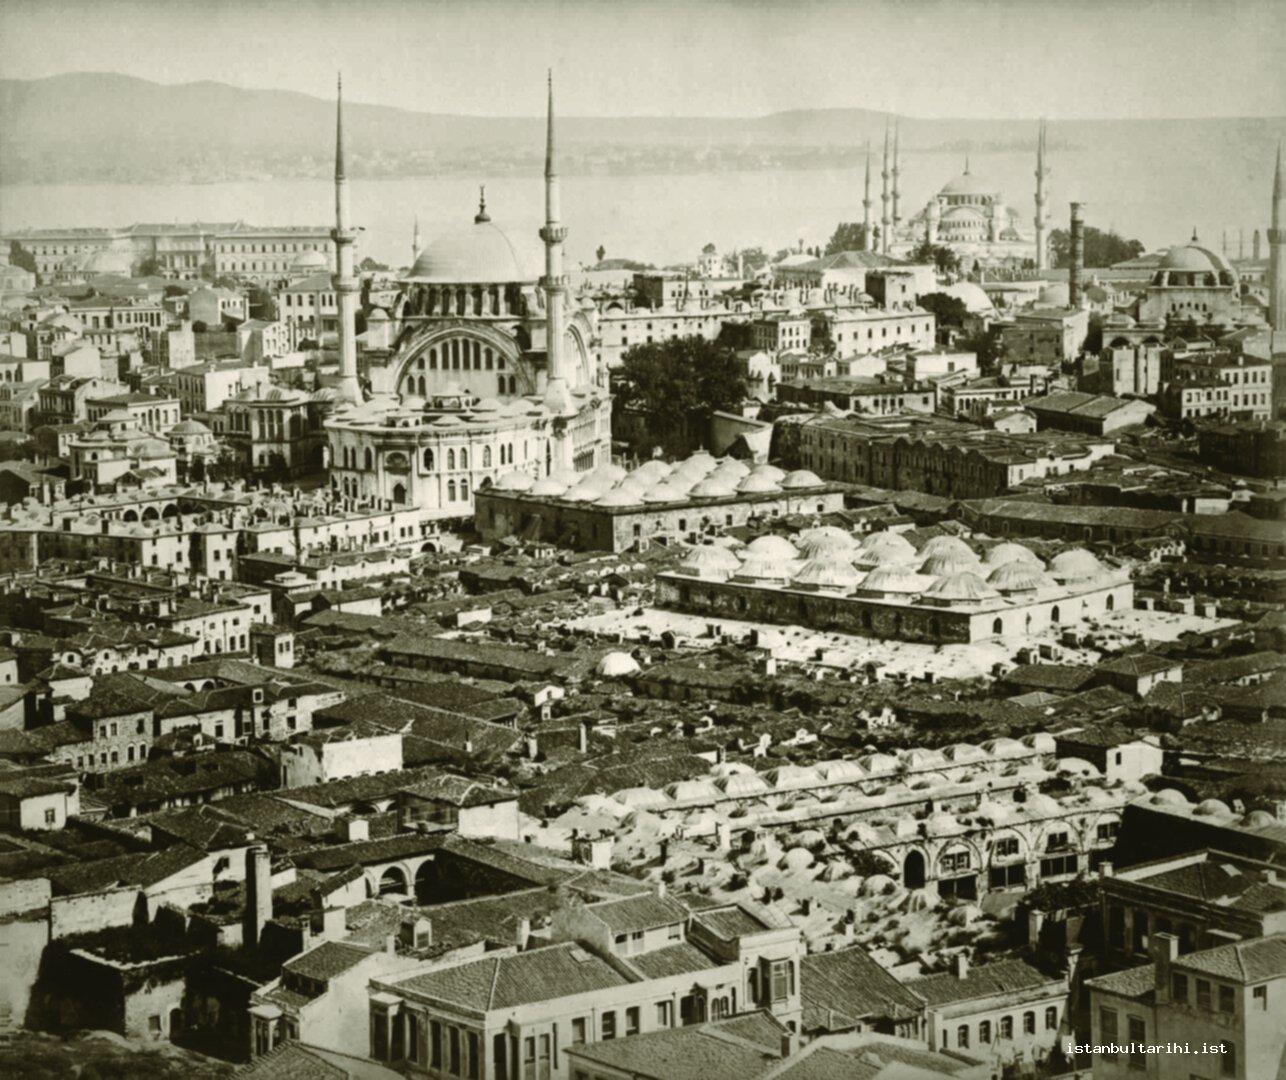 5- From Grand Bazaar to Sultanahmet (Yıldız Albums)